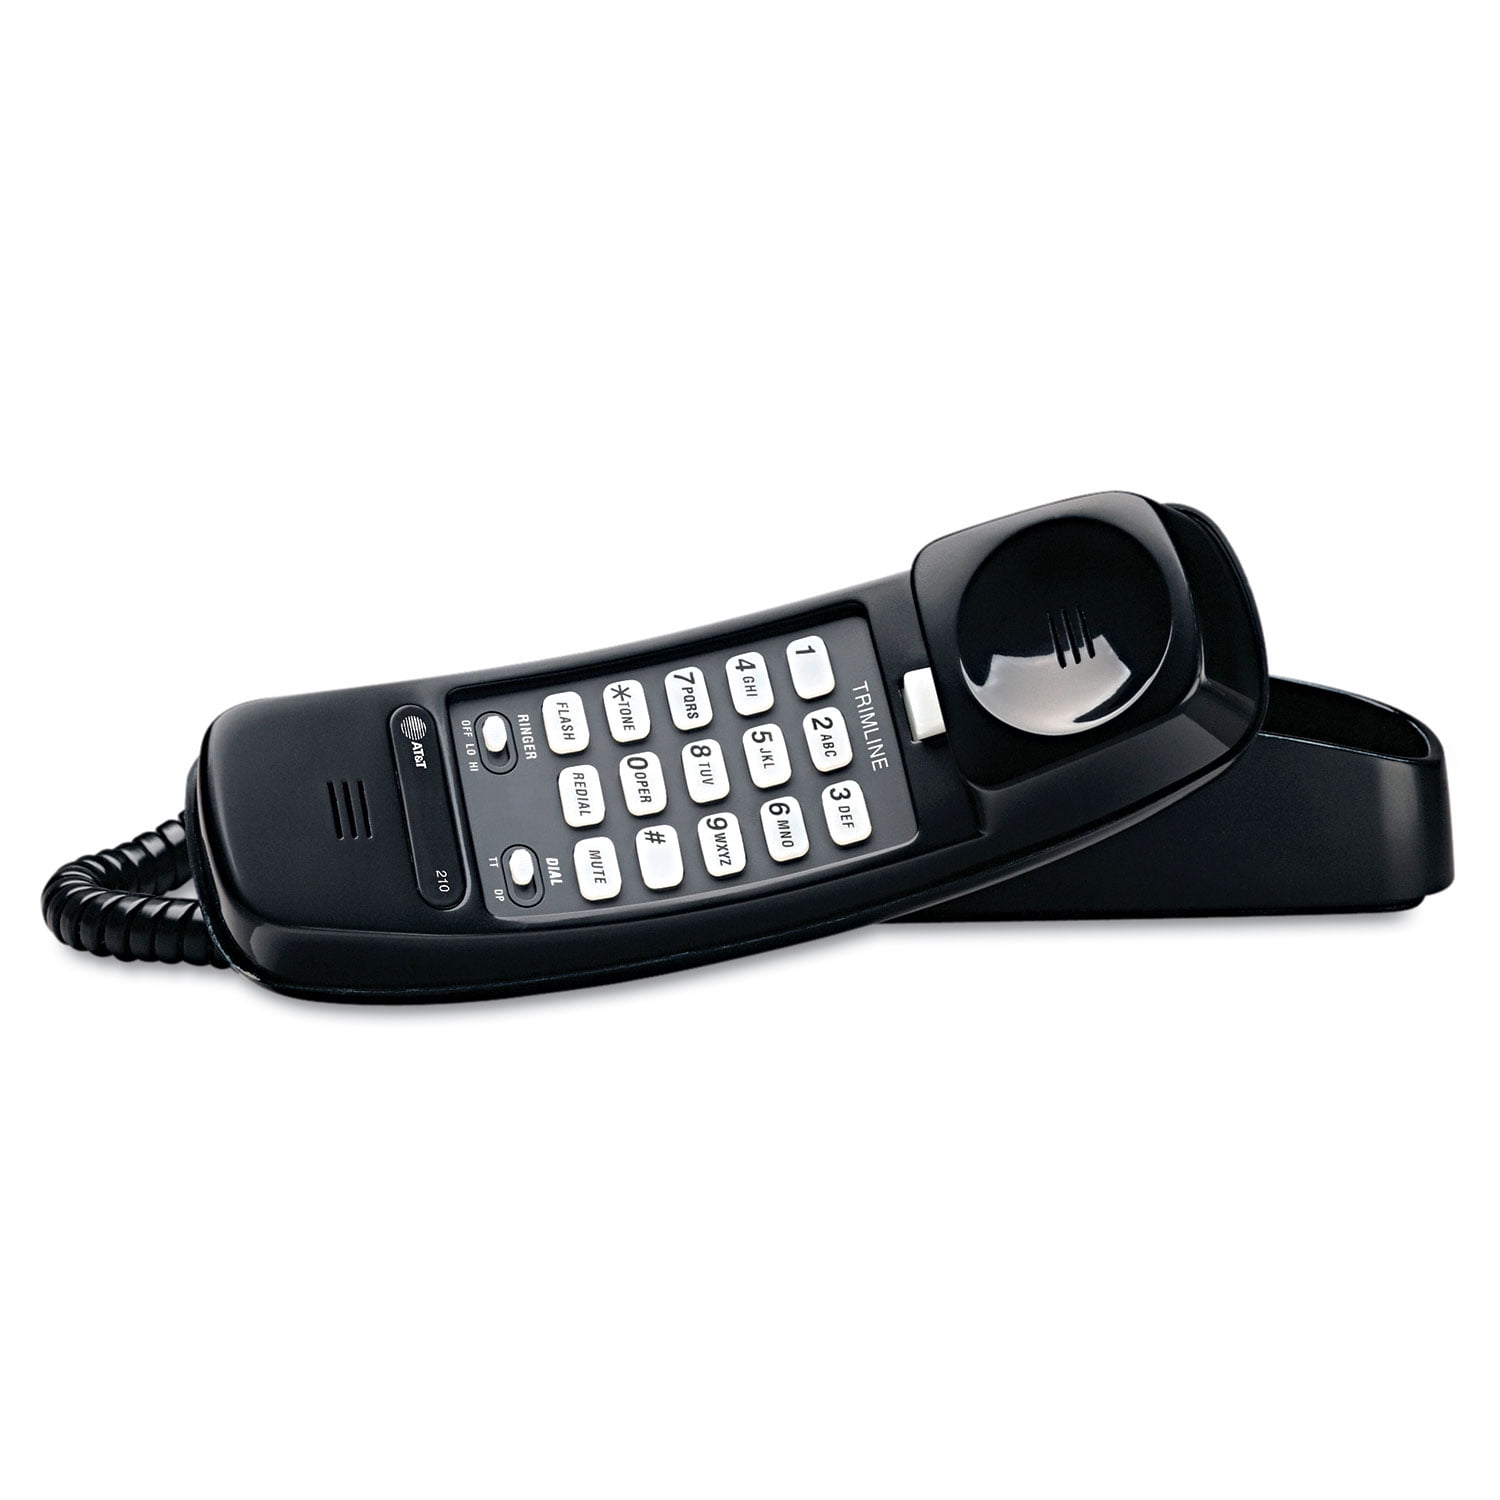 GE DSL Phone Line Filter 76249